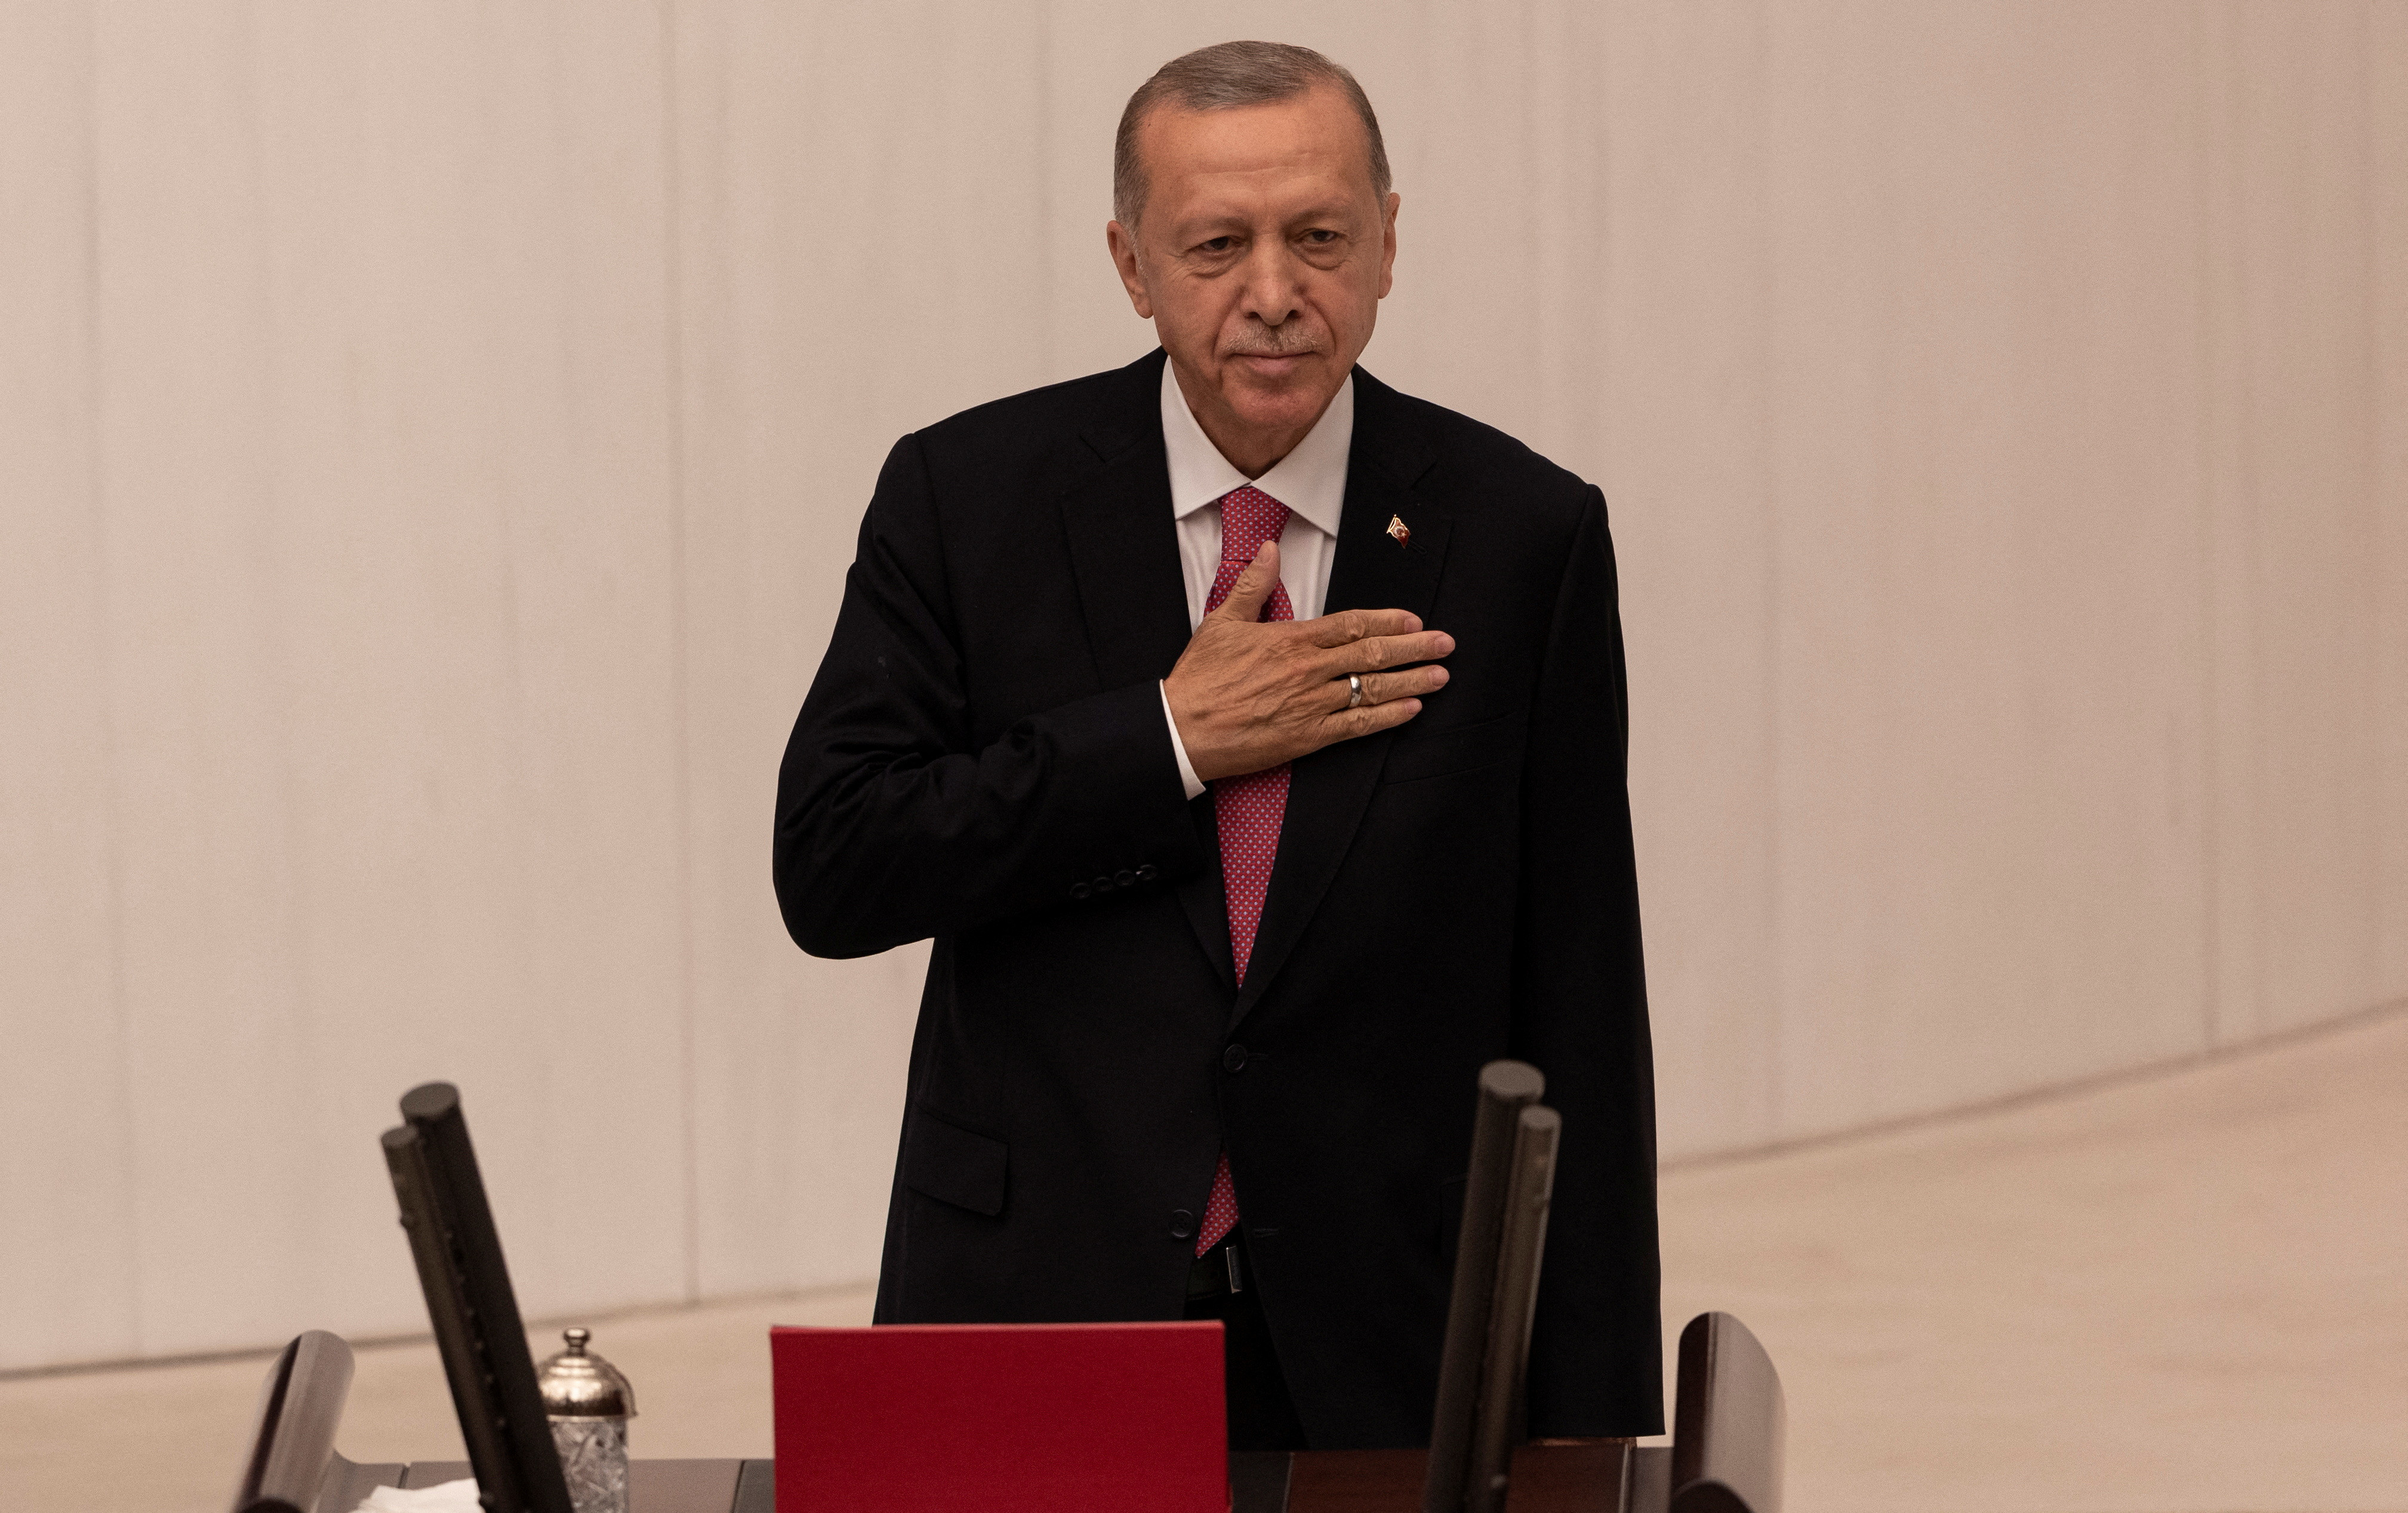 Turkiye's Erdogan sworn in for new term as president